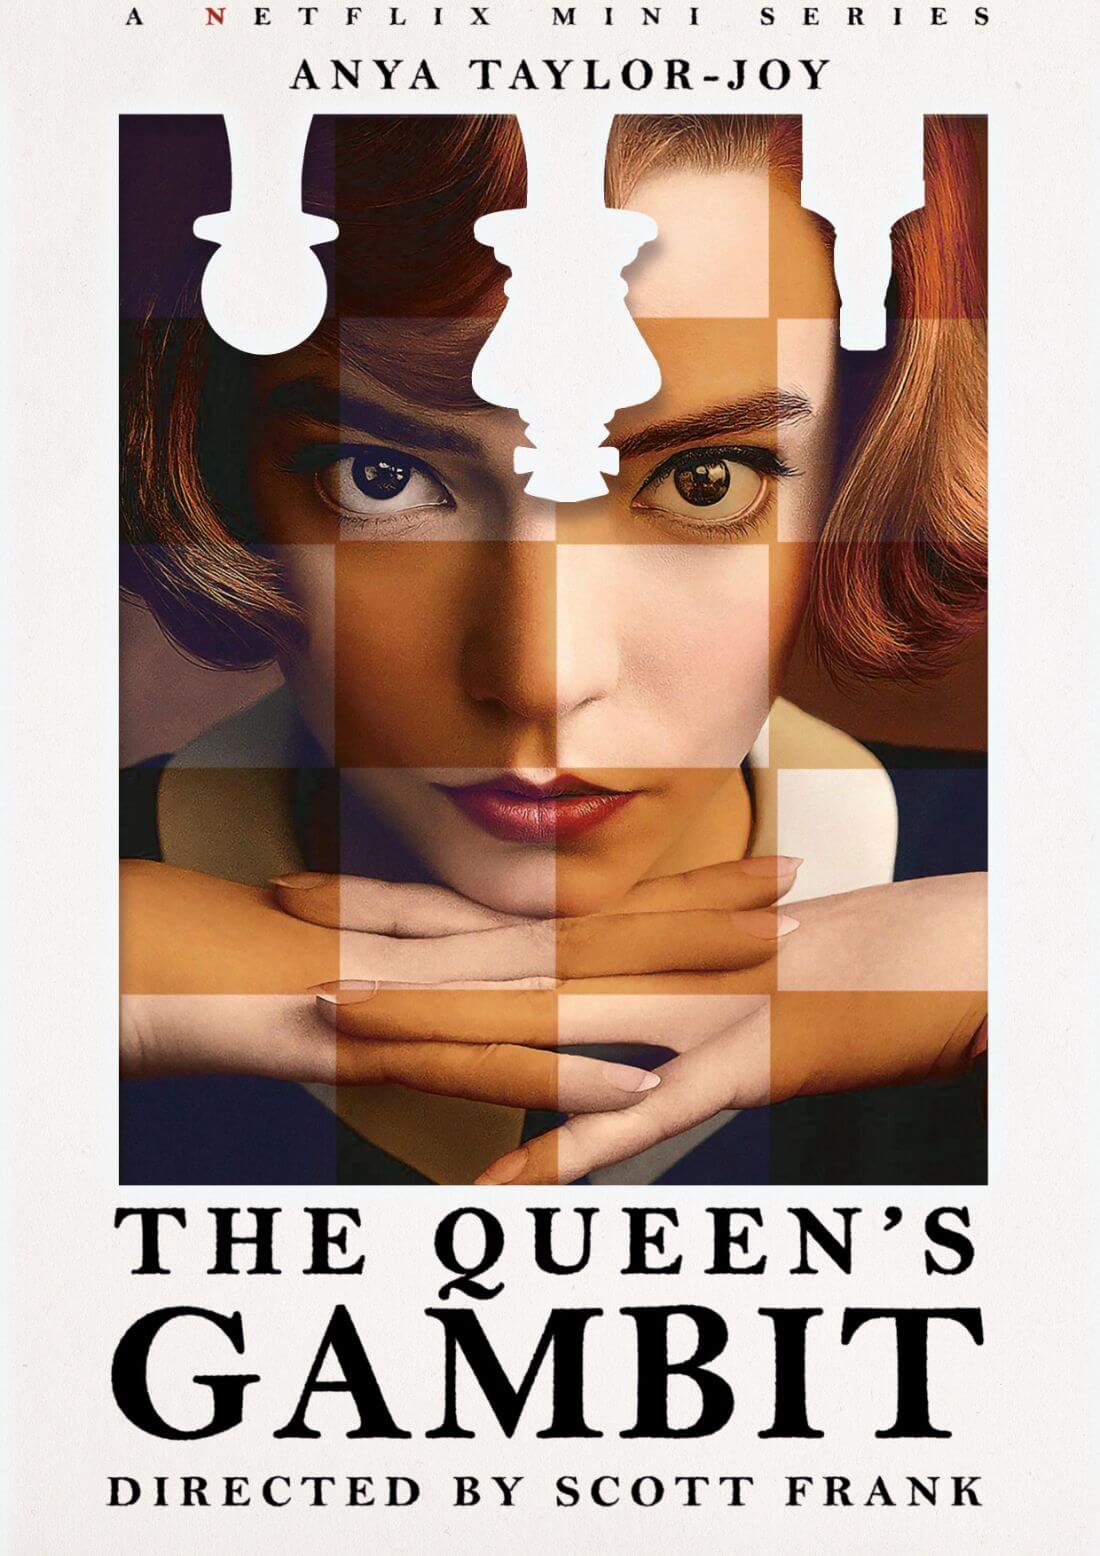 The Queen's Gambit - The DVDfever Review - Netflix - Anya Taylor-Joy